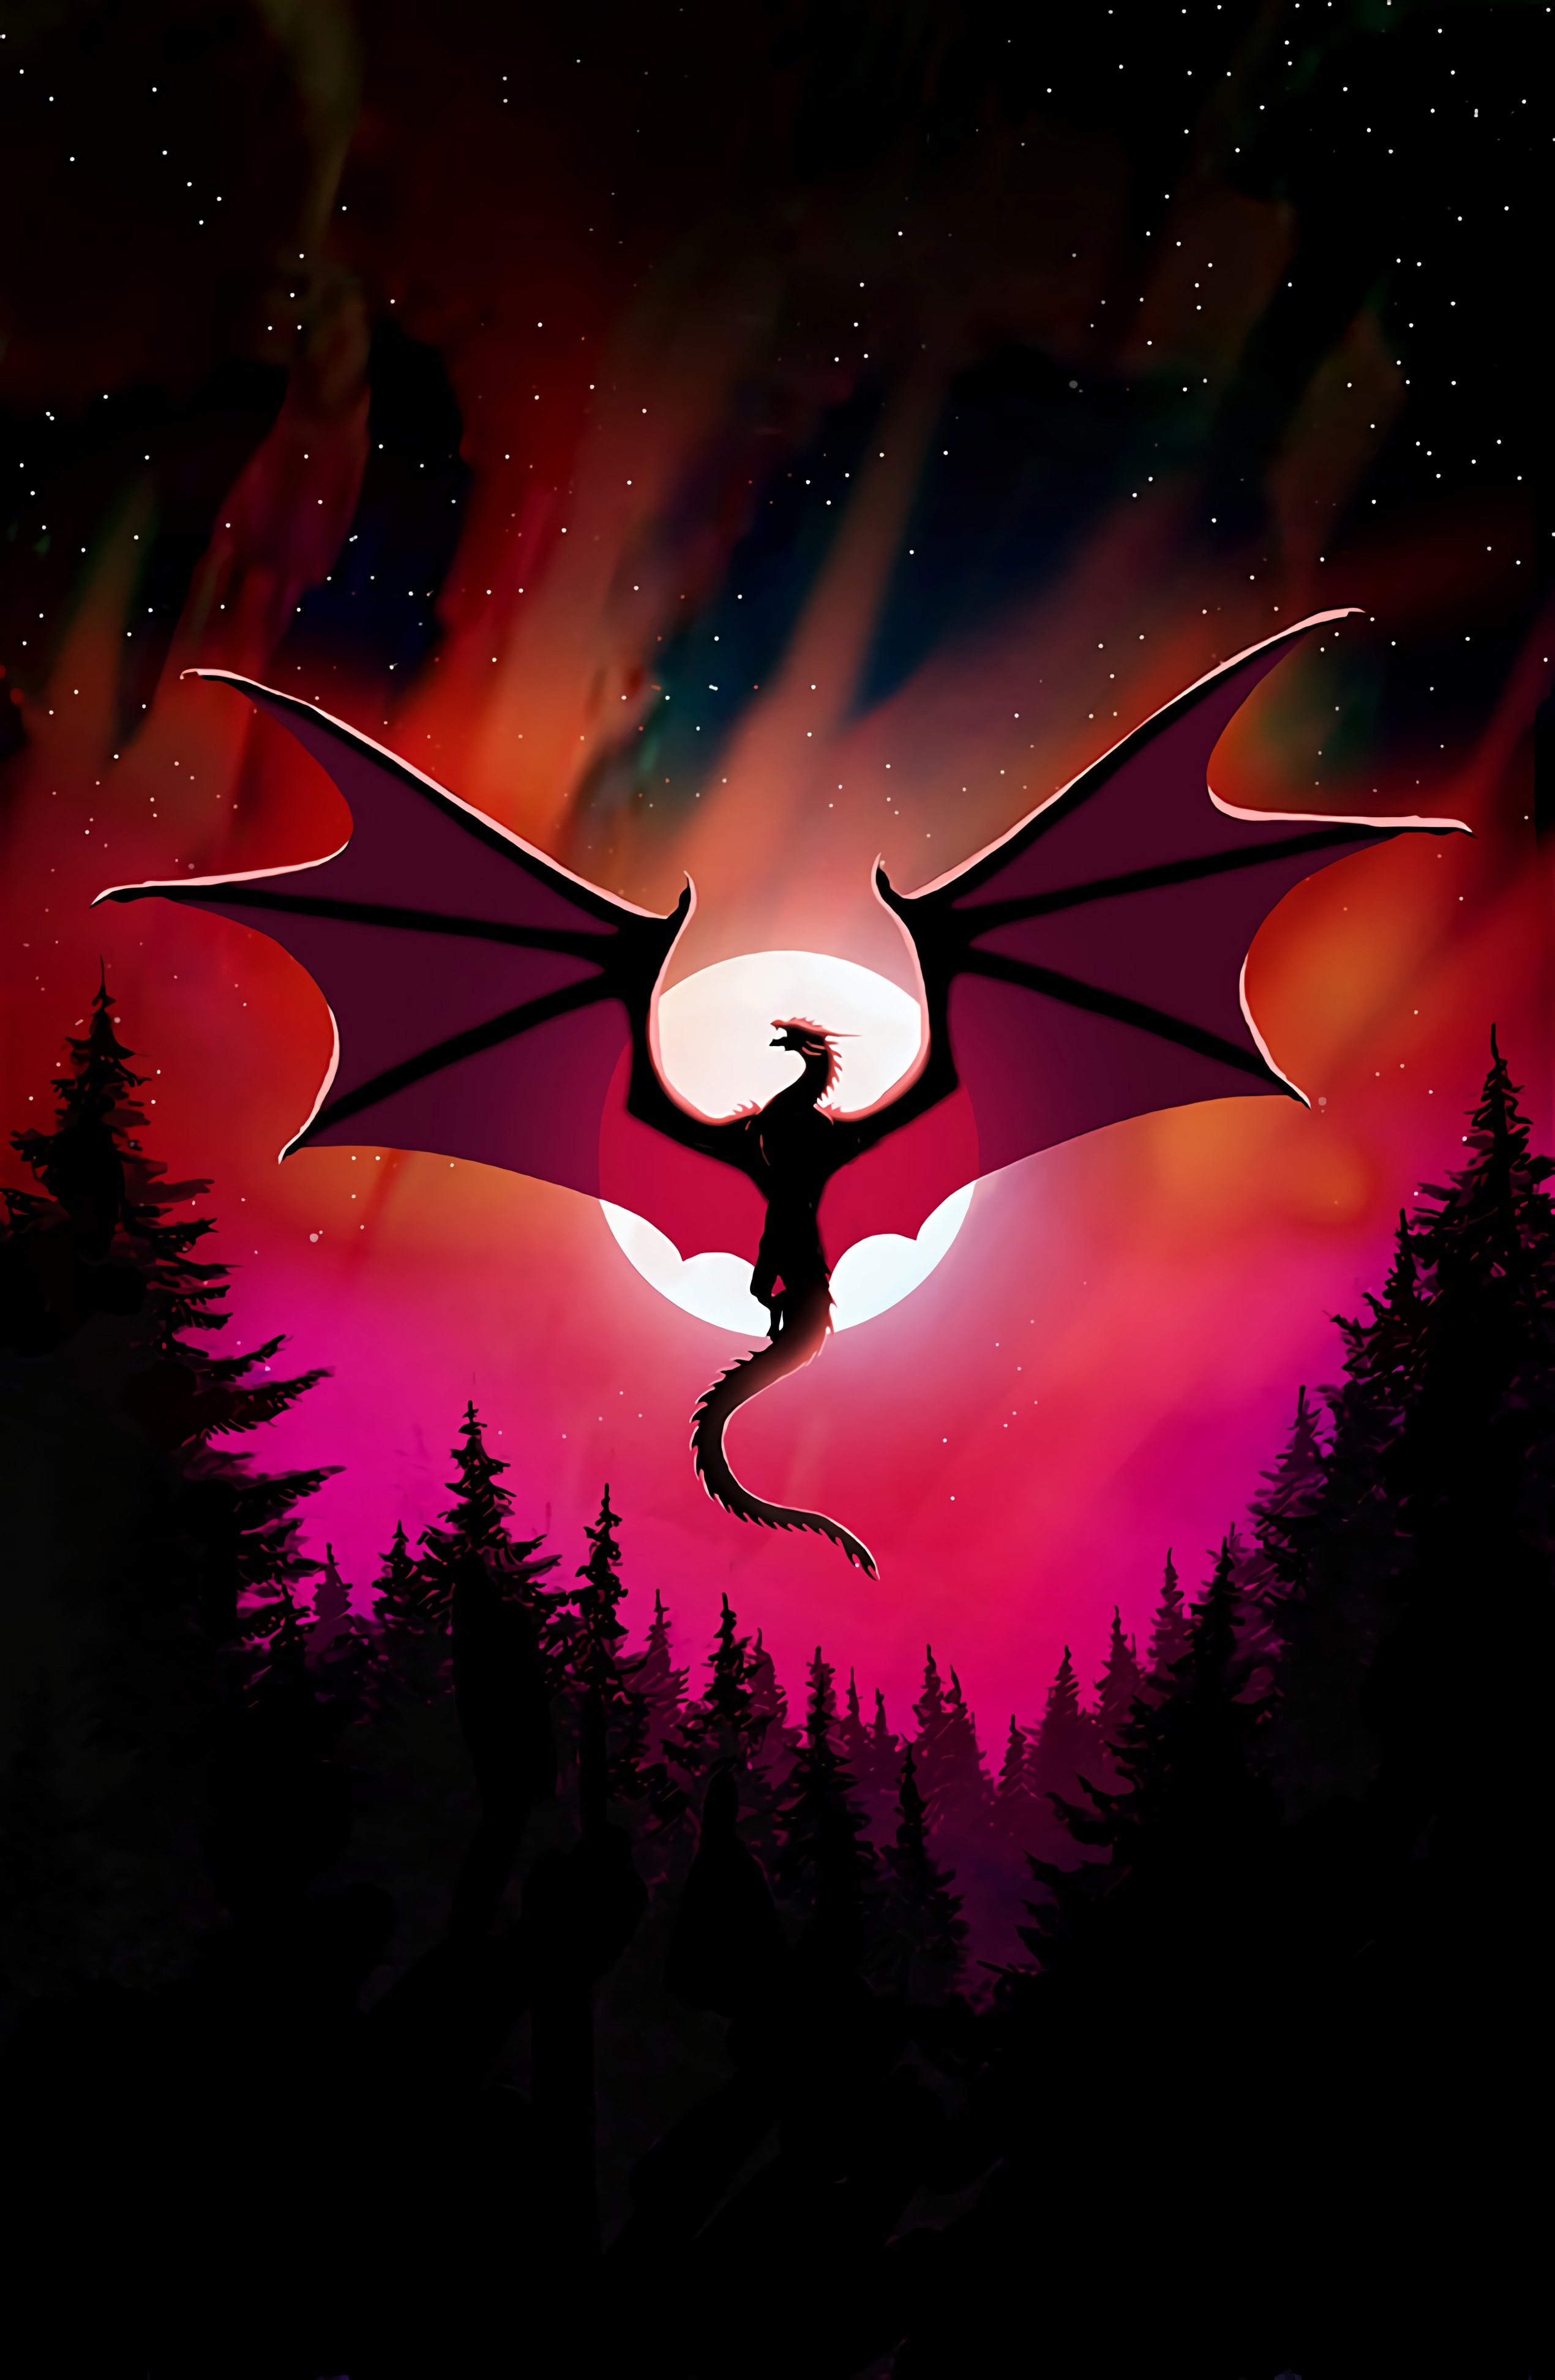 Dragon Desktop Background Image